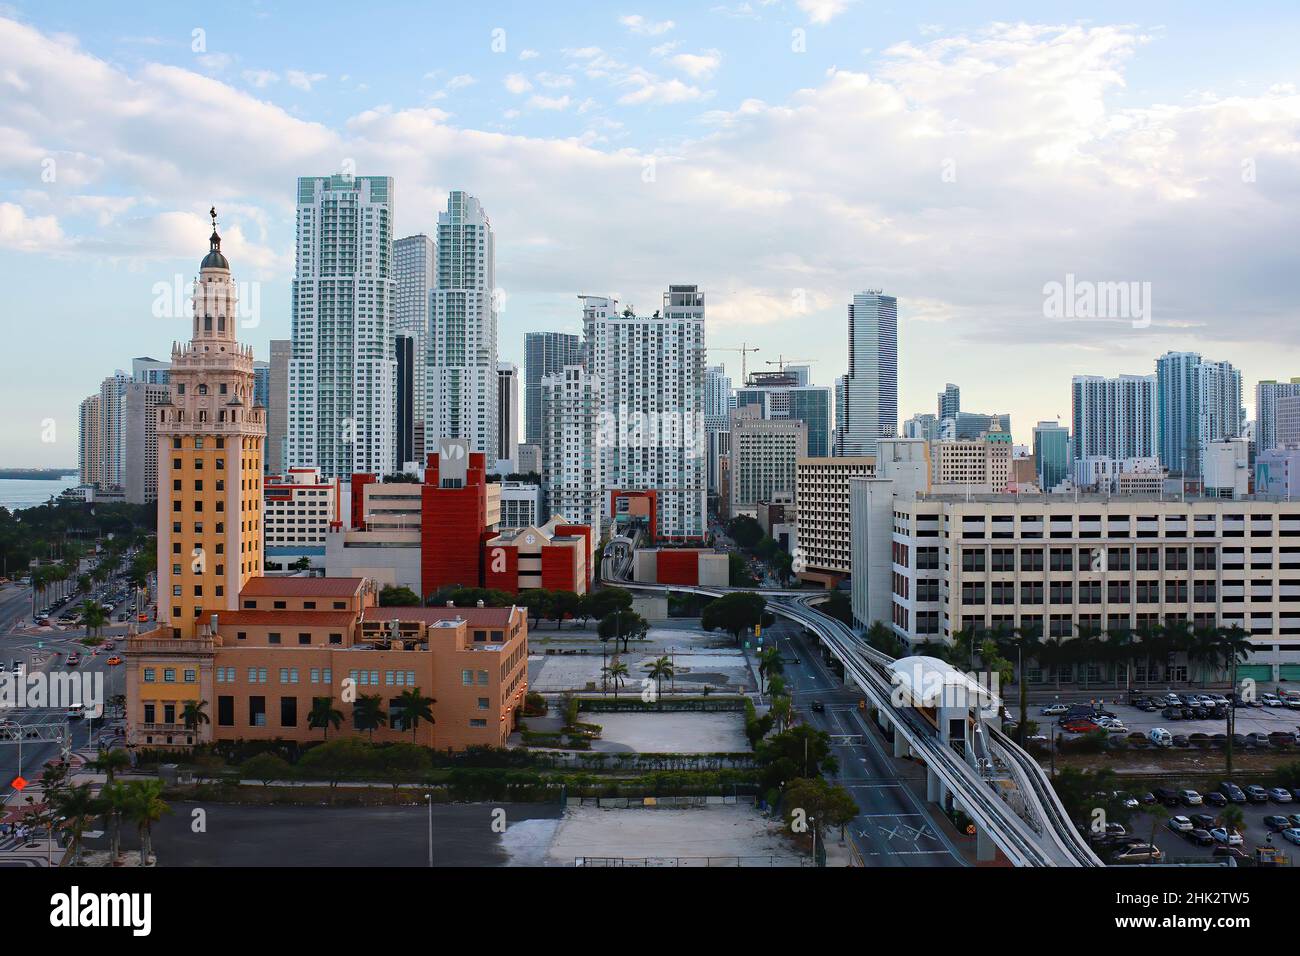 Stadtbild der Innenstadt von Miami mit dem Freedom Tower und Wolkenkratzern. Stockfoto